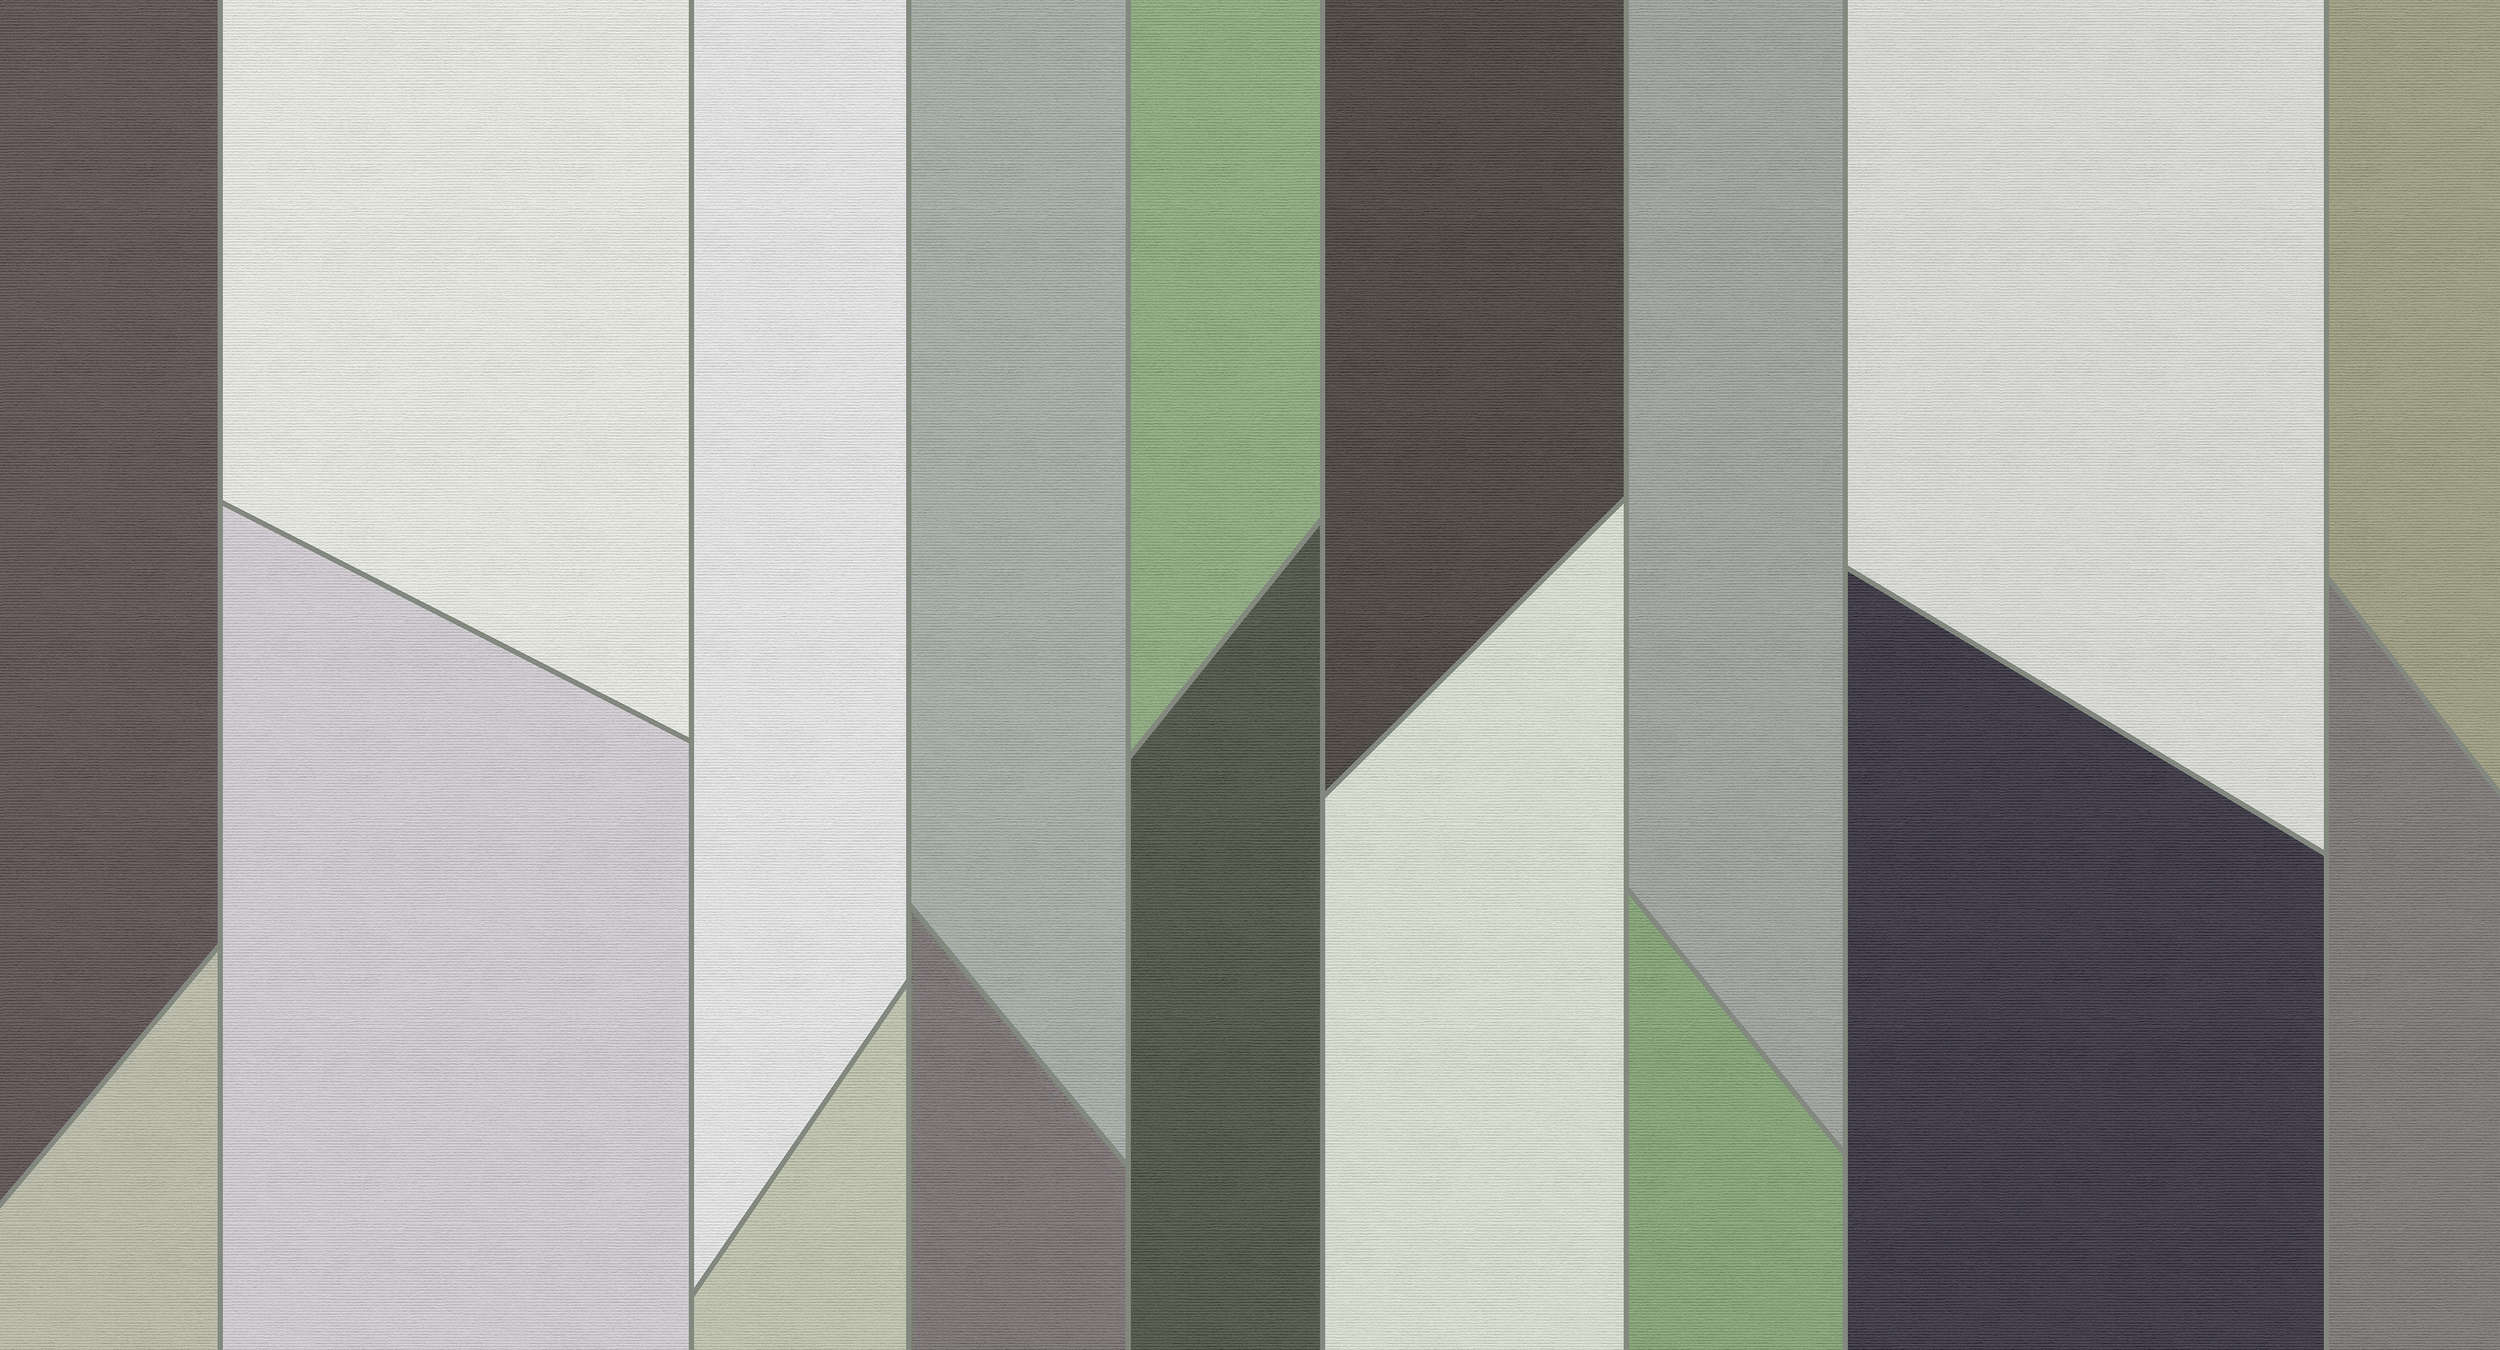             Geometry 3 - Streifen Fototapete in gerippter Struktur mit buntem Retro Design – Grün, Violett | Perlmutt Glattvlies
        